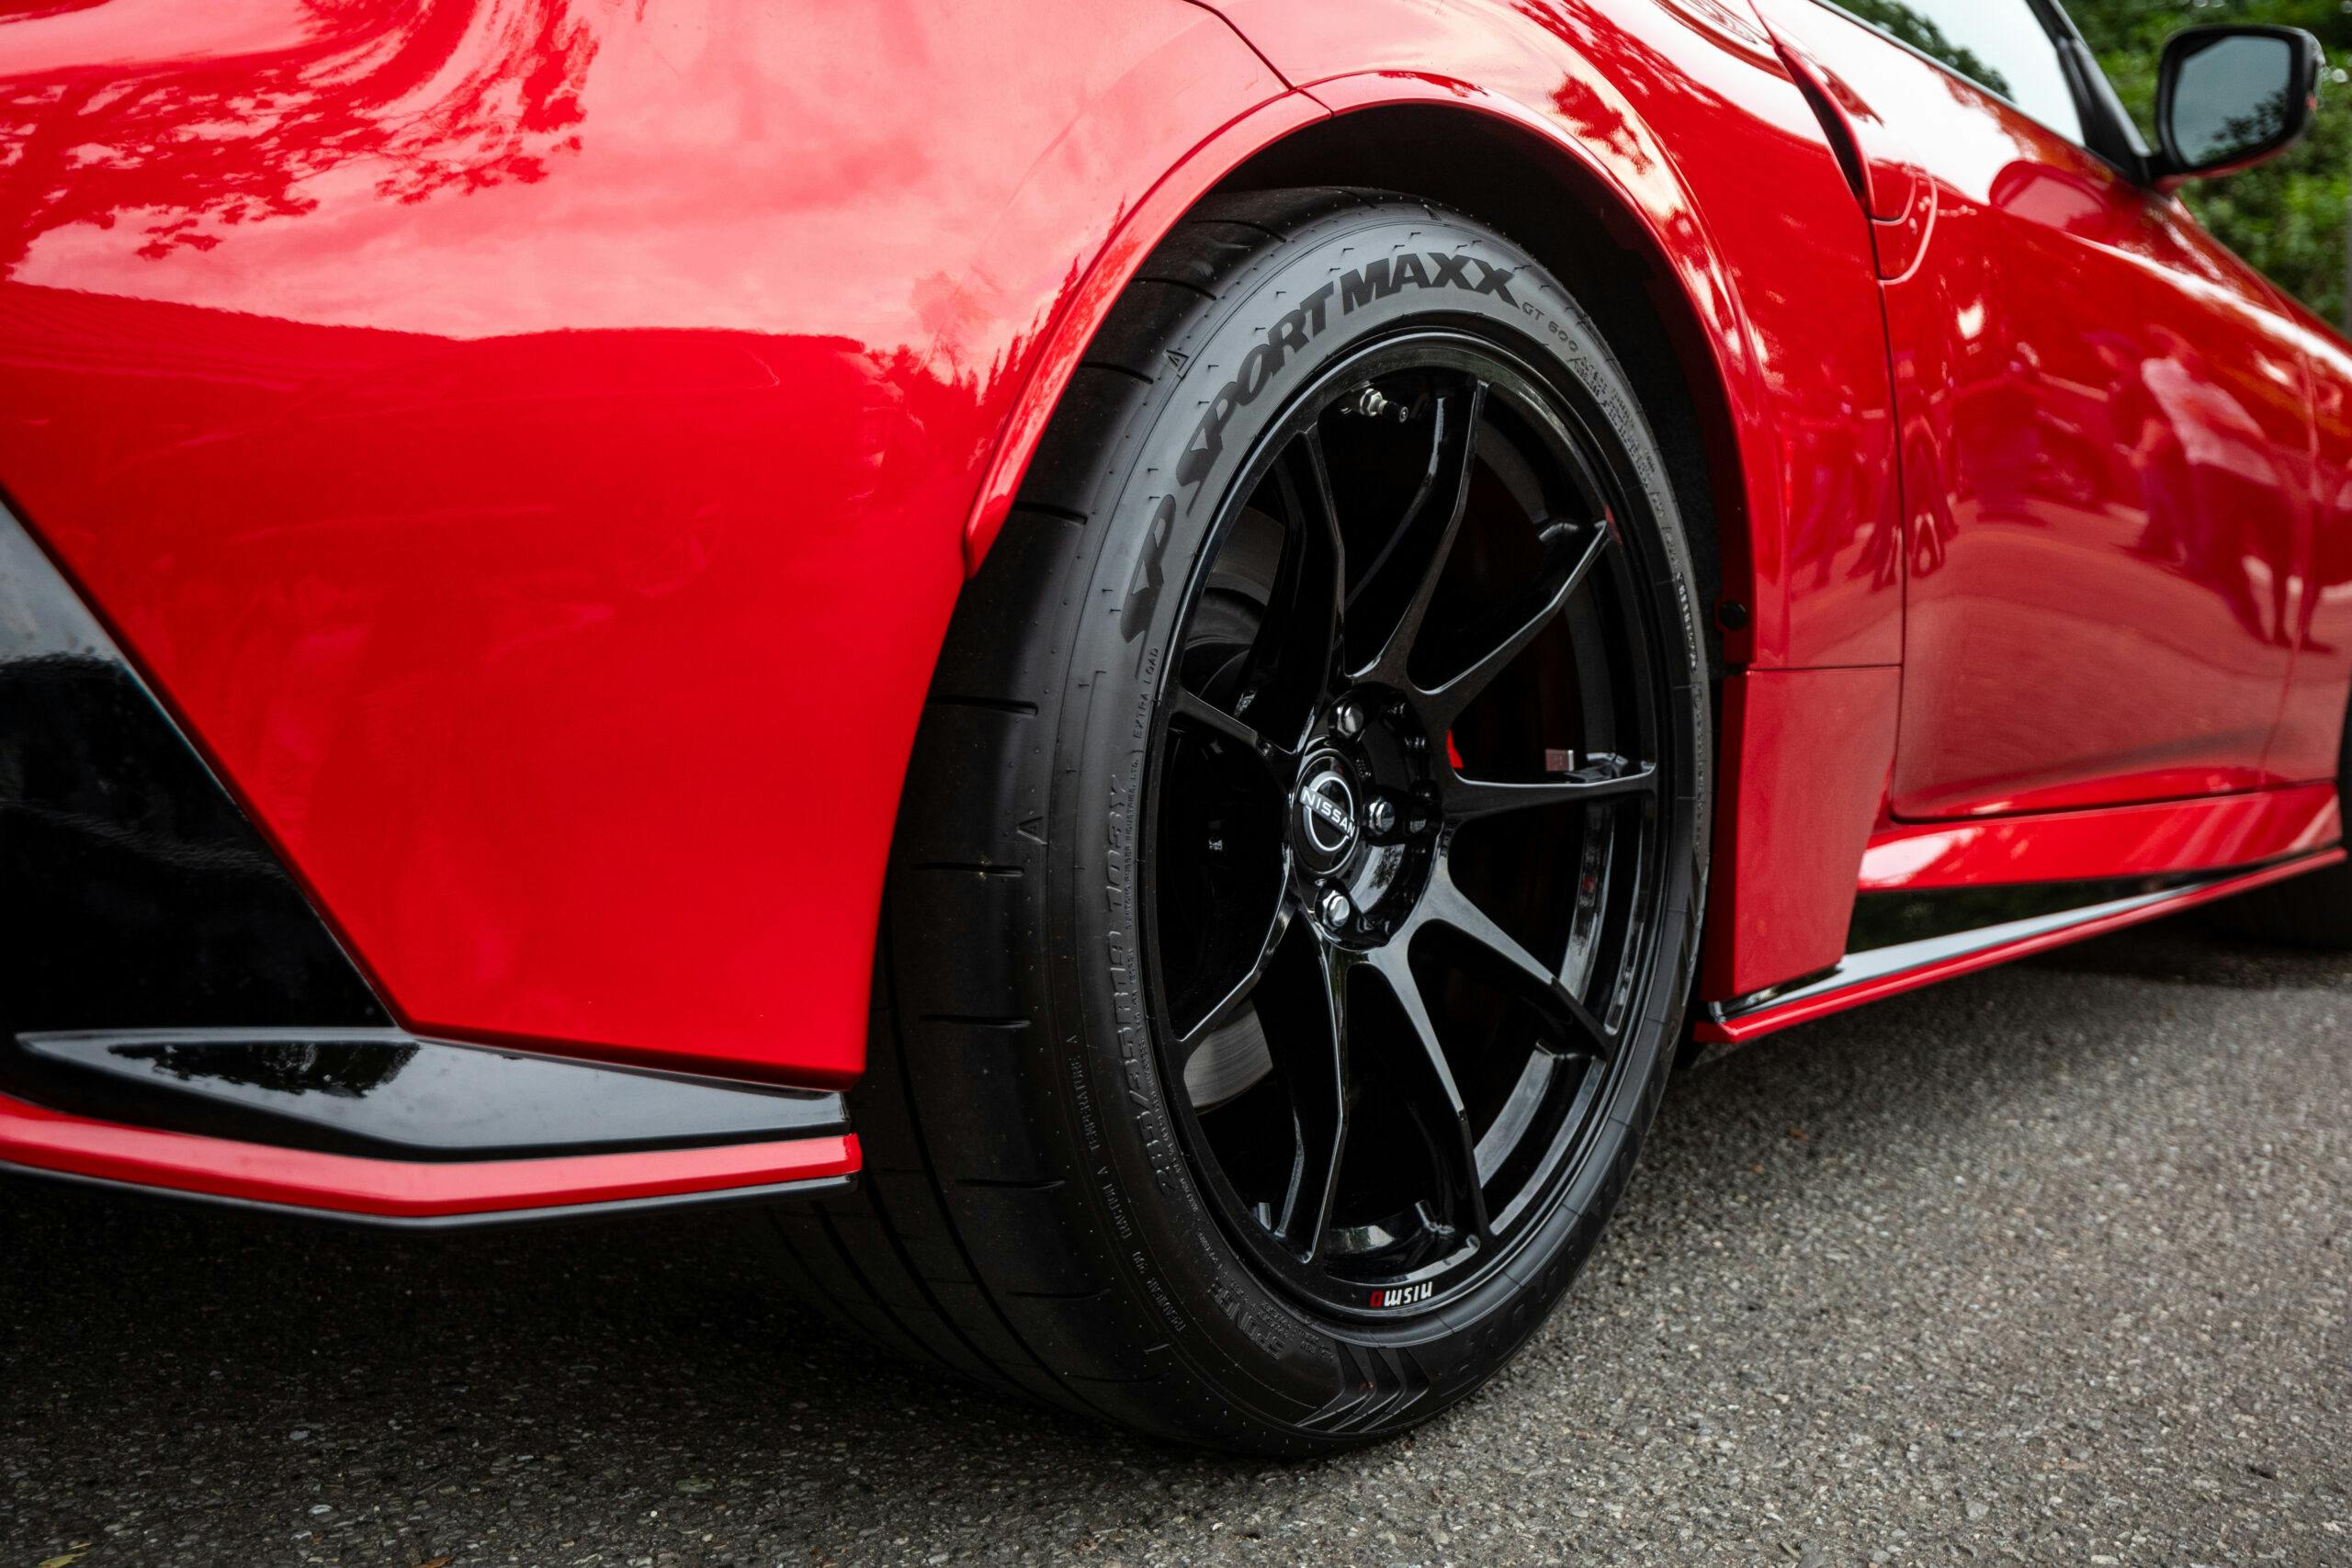 Nissan Z Nismo detail rear wheel tire